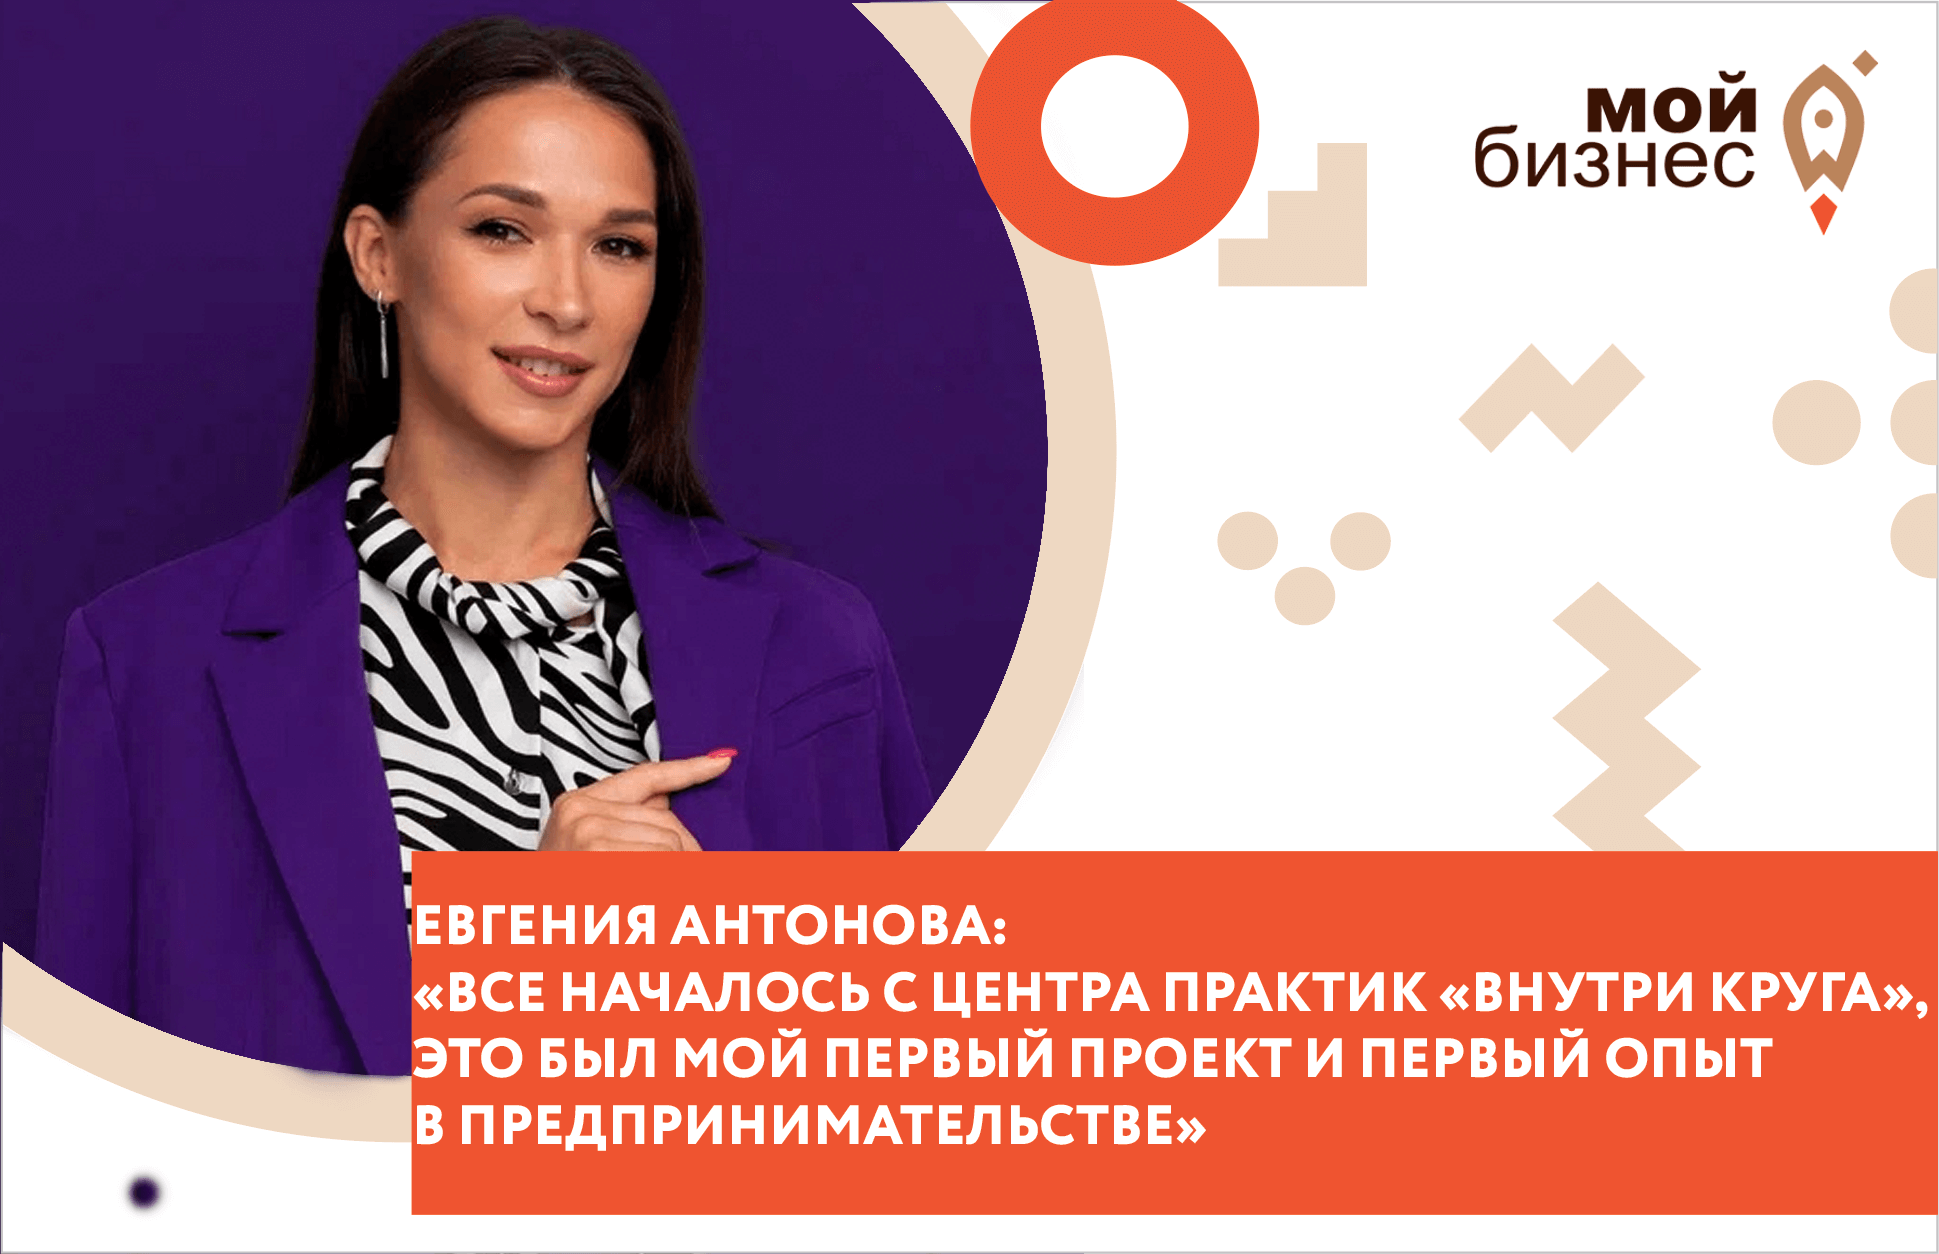 Евгения Антонова: "Все началось с Центра практик "Внутри круга", это был мой первый проект и первый опыт в предпринимательстве"